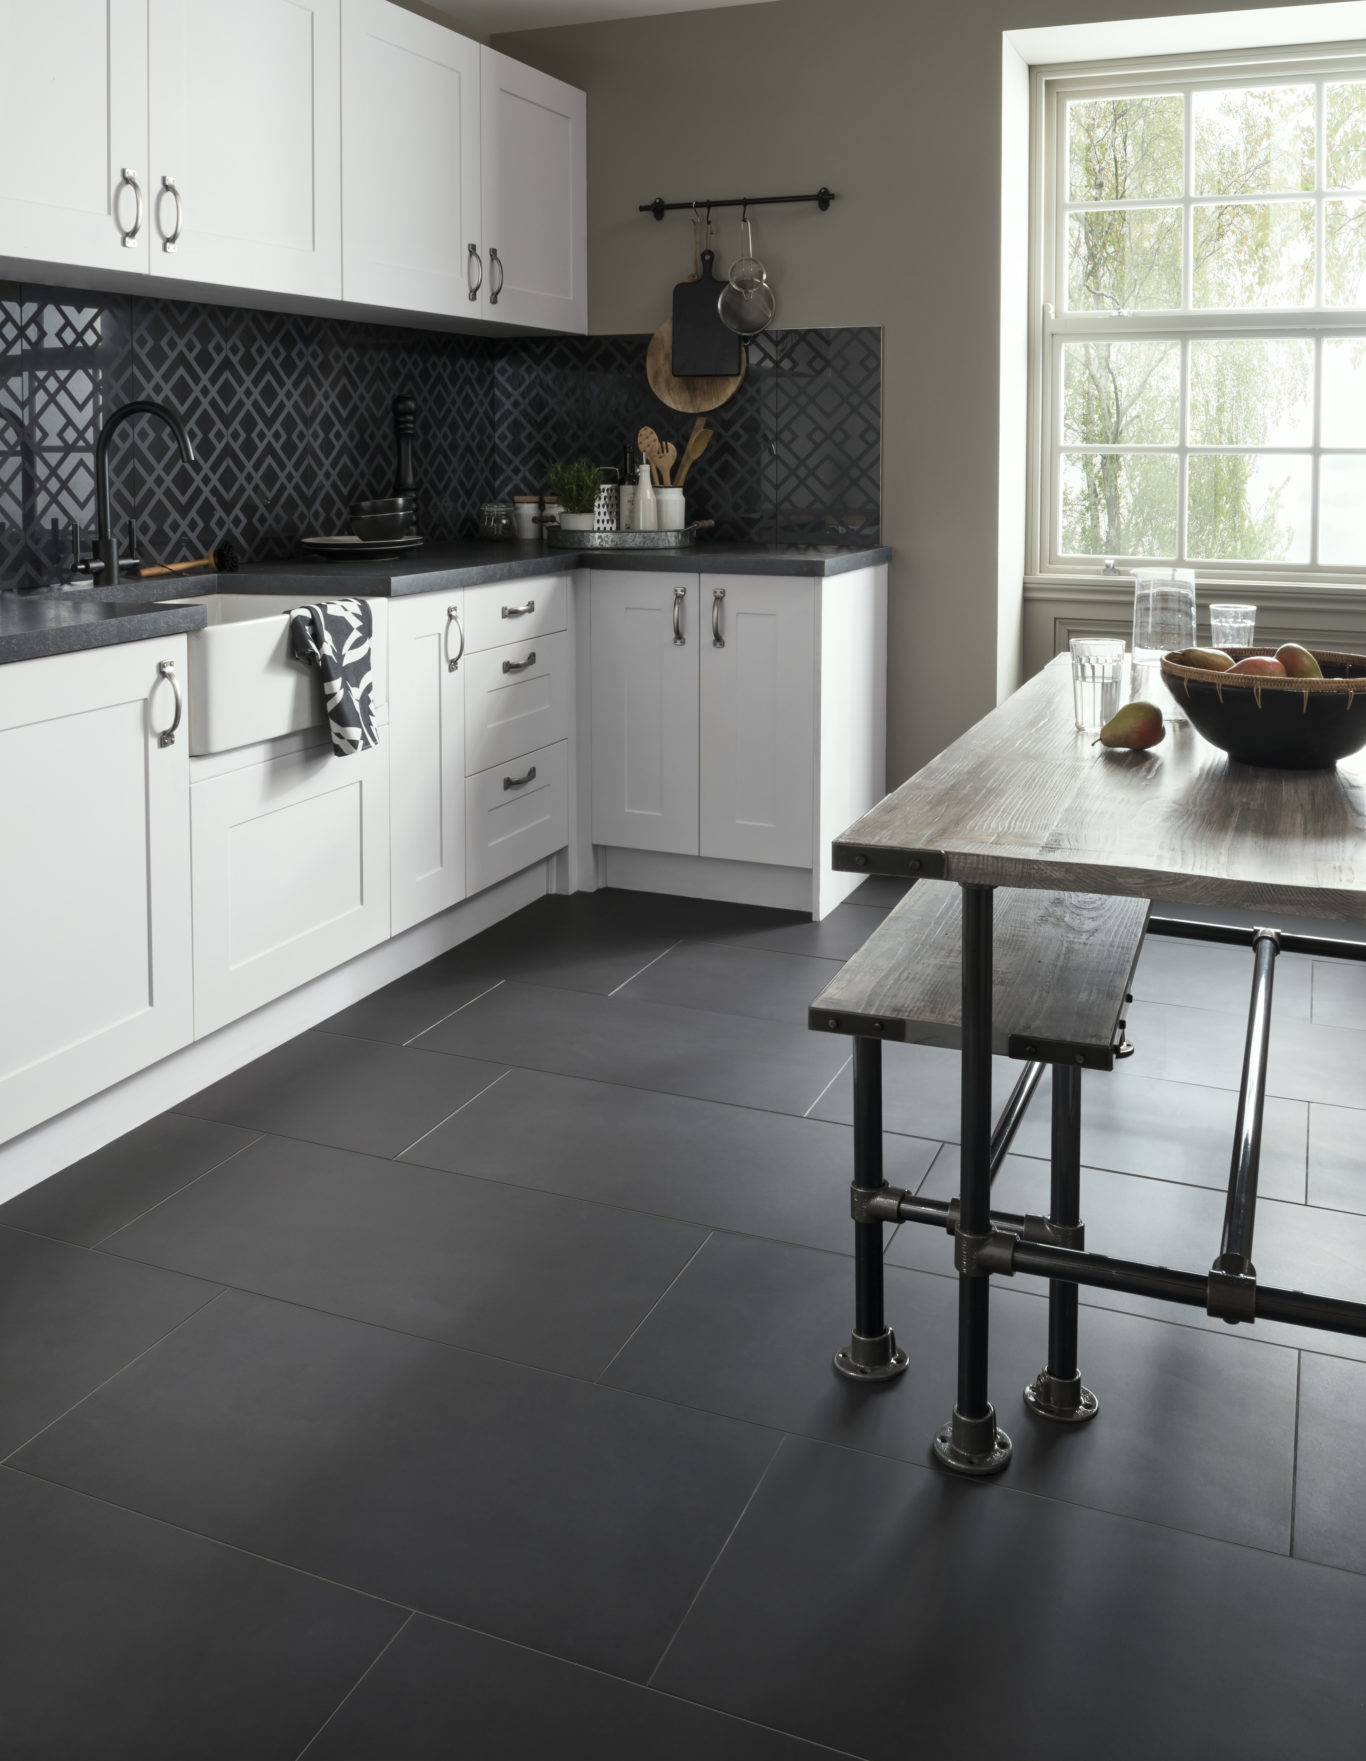 Tiles, laminate or luxury vinyl Which kitchen flooring option’s best